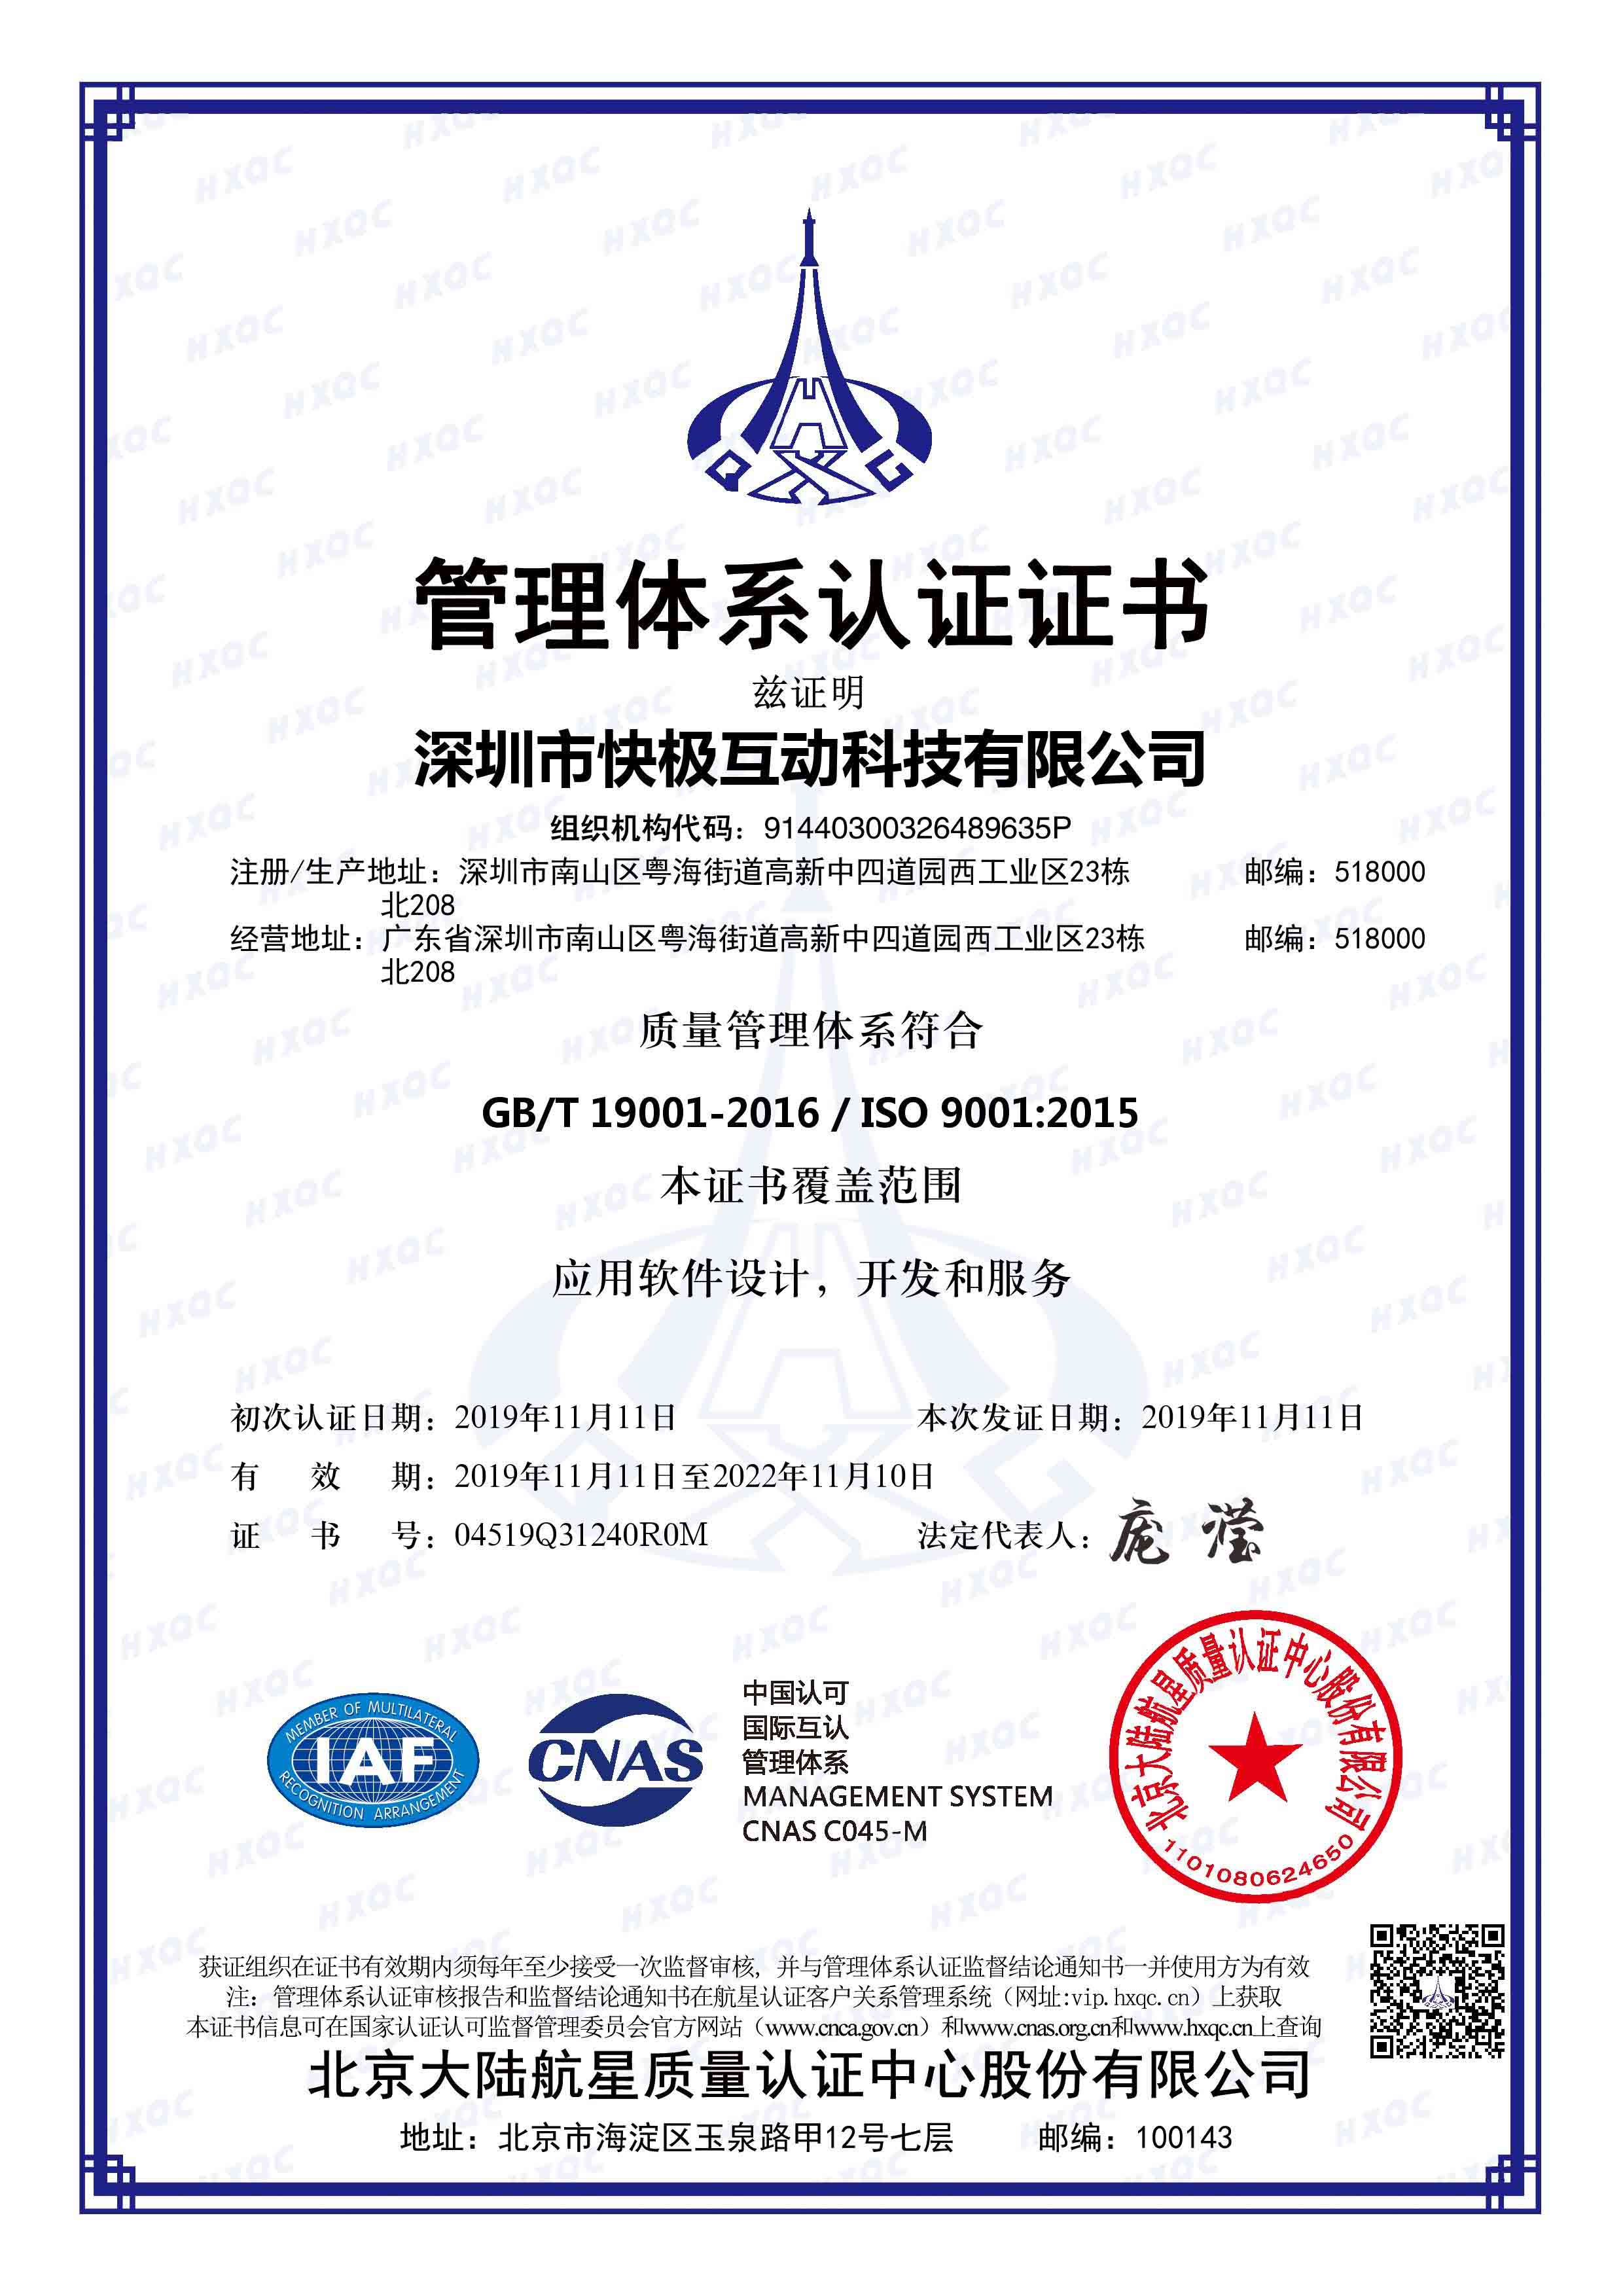 恭喜快极互动获得iso9001认证证书